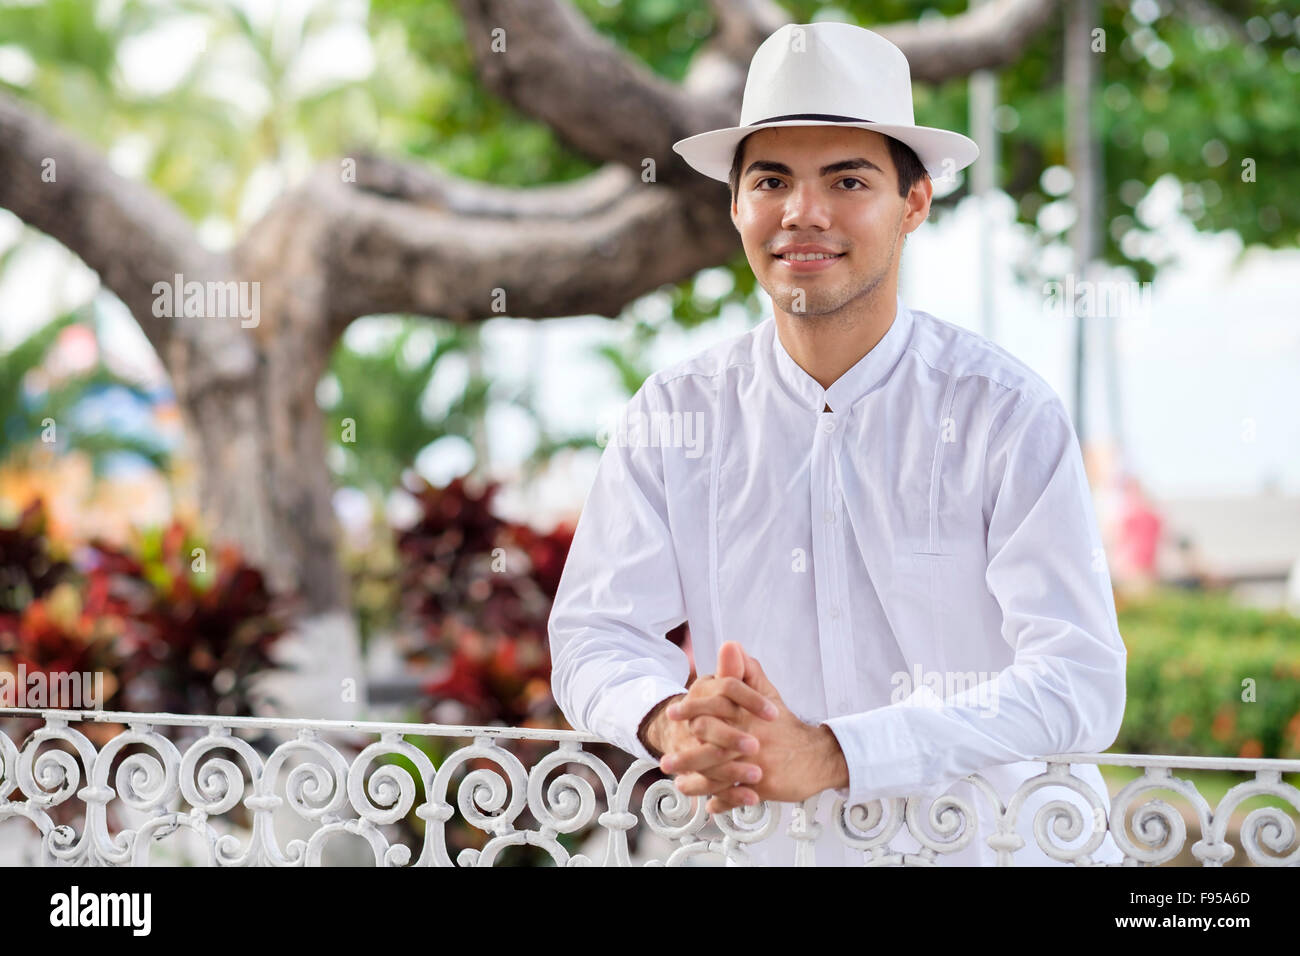 Jeune homme hispanique dans des vêtements, portant une chemise blanche, pantalon et chapeau, smiling at camera. Banque D'Images